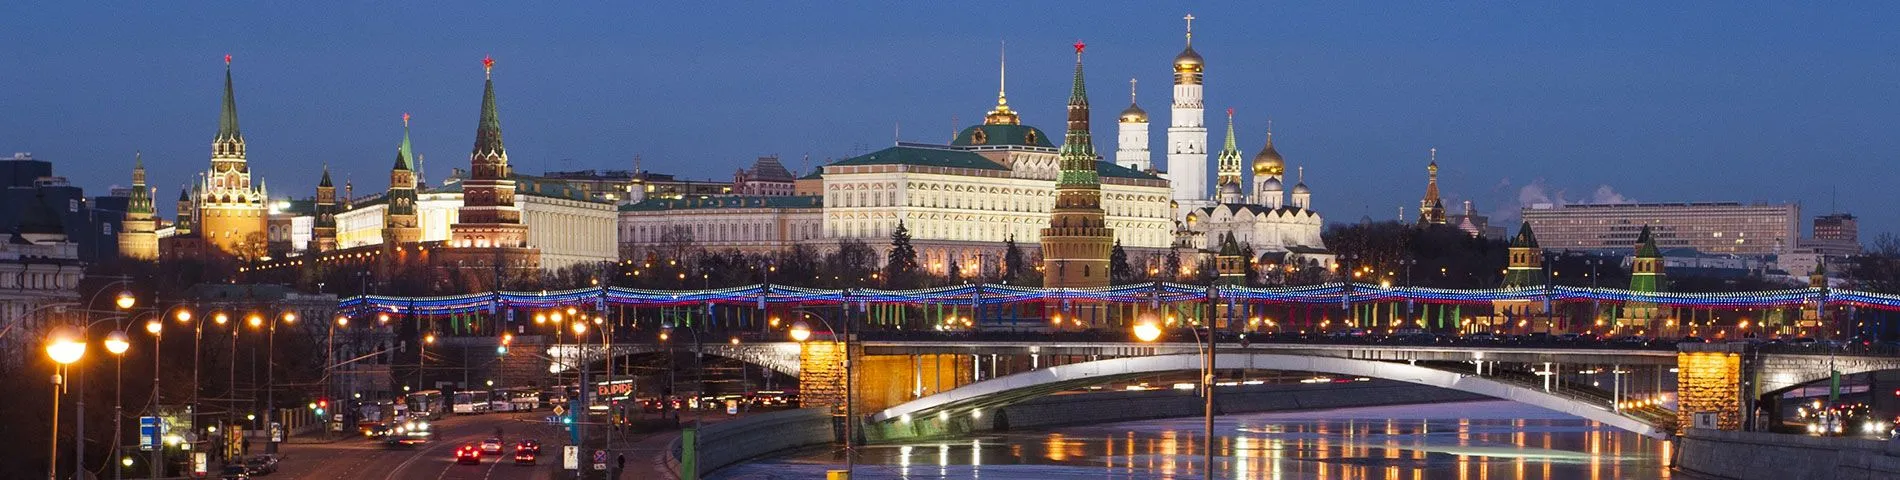 Moscou - Curs estàndard